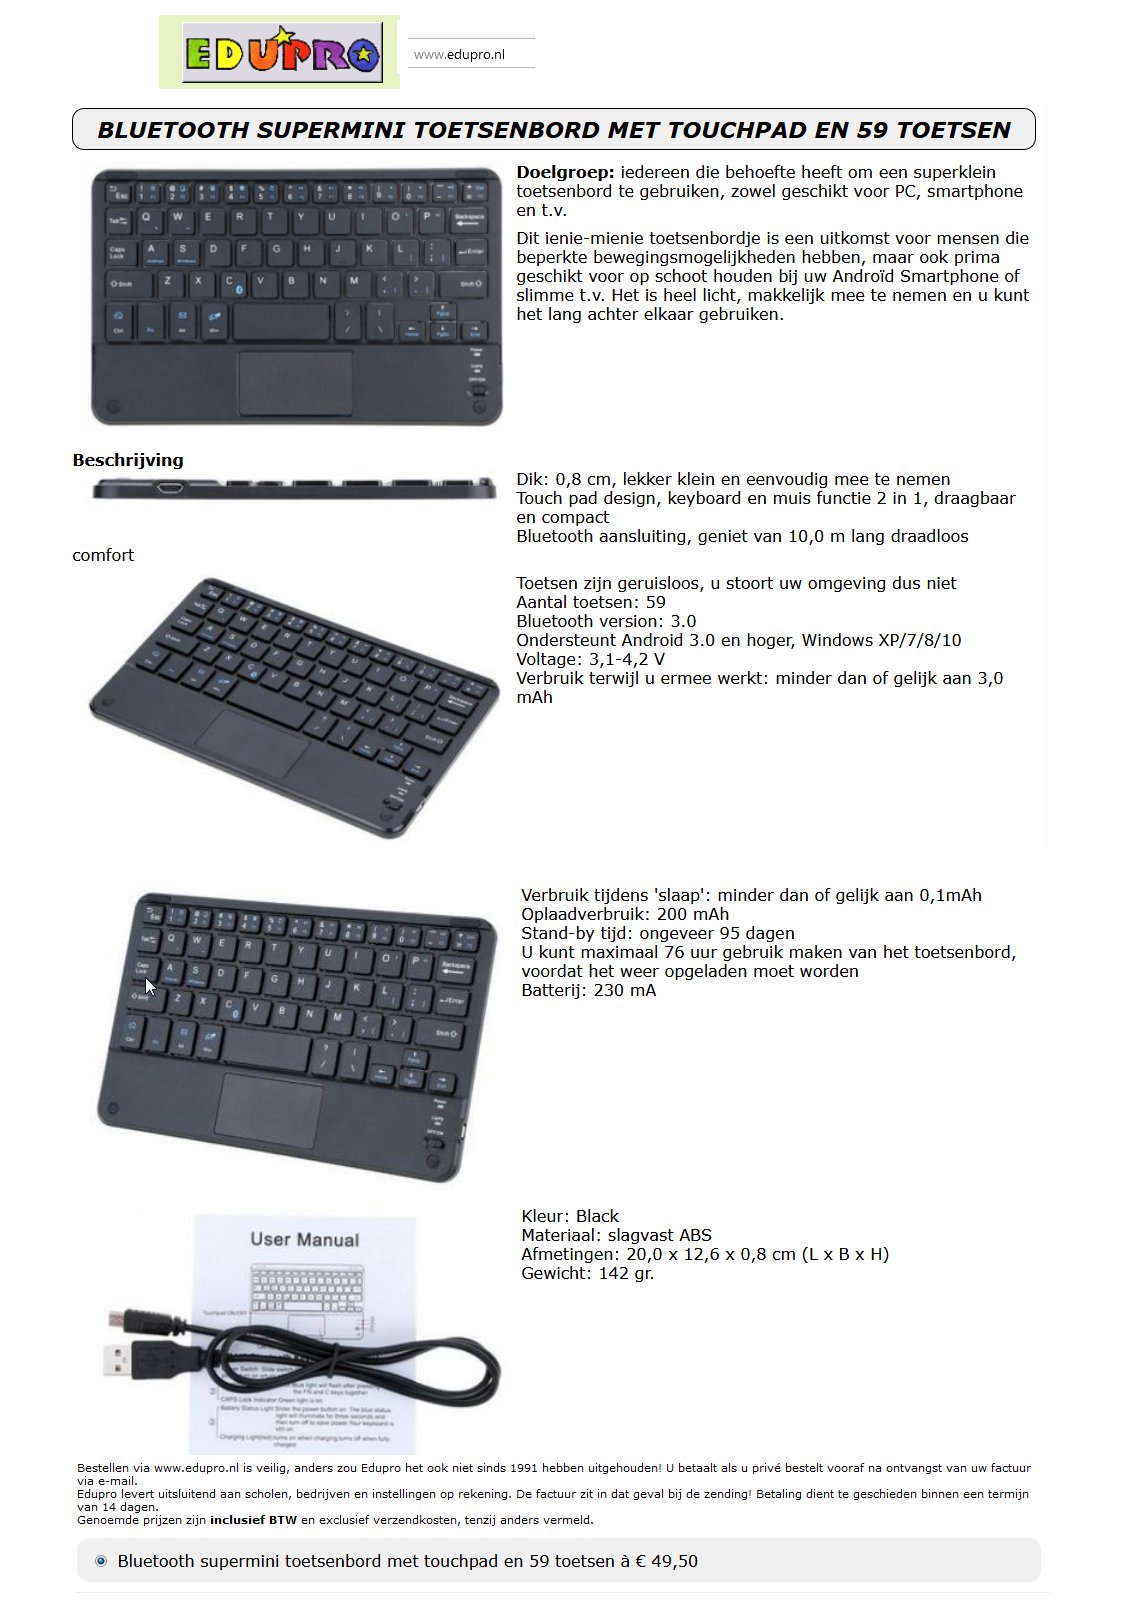 toegevoegd document 2 van Supermini bluetooth toetsenbord met touchpad  